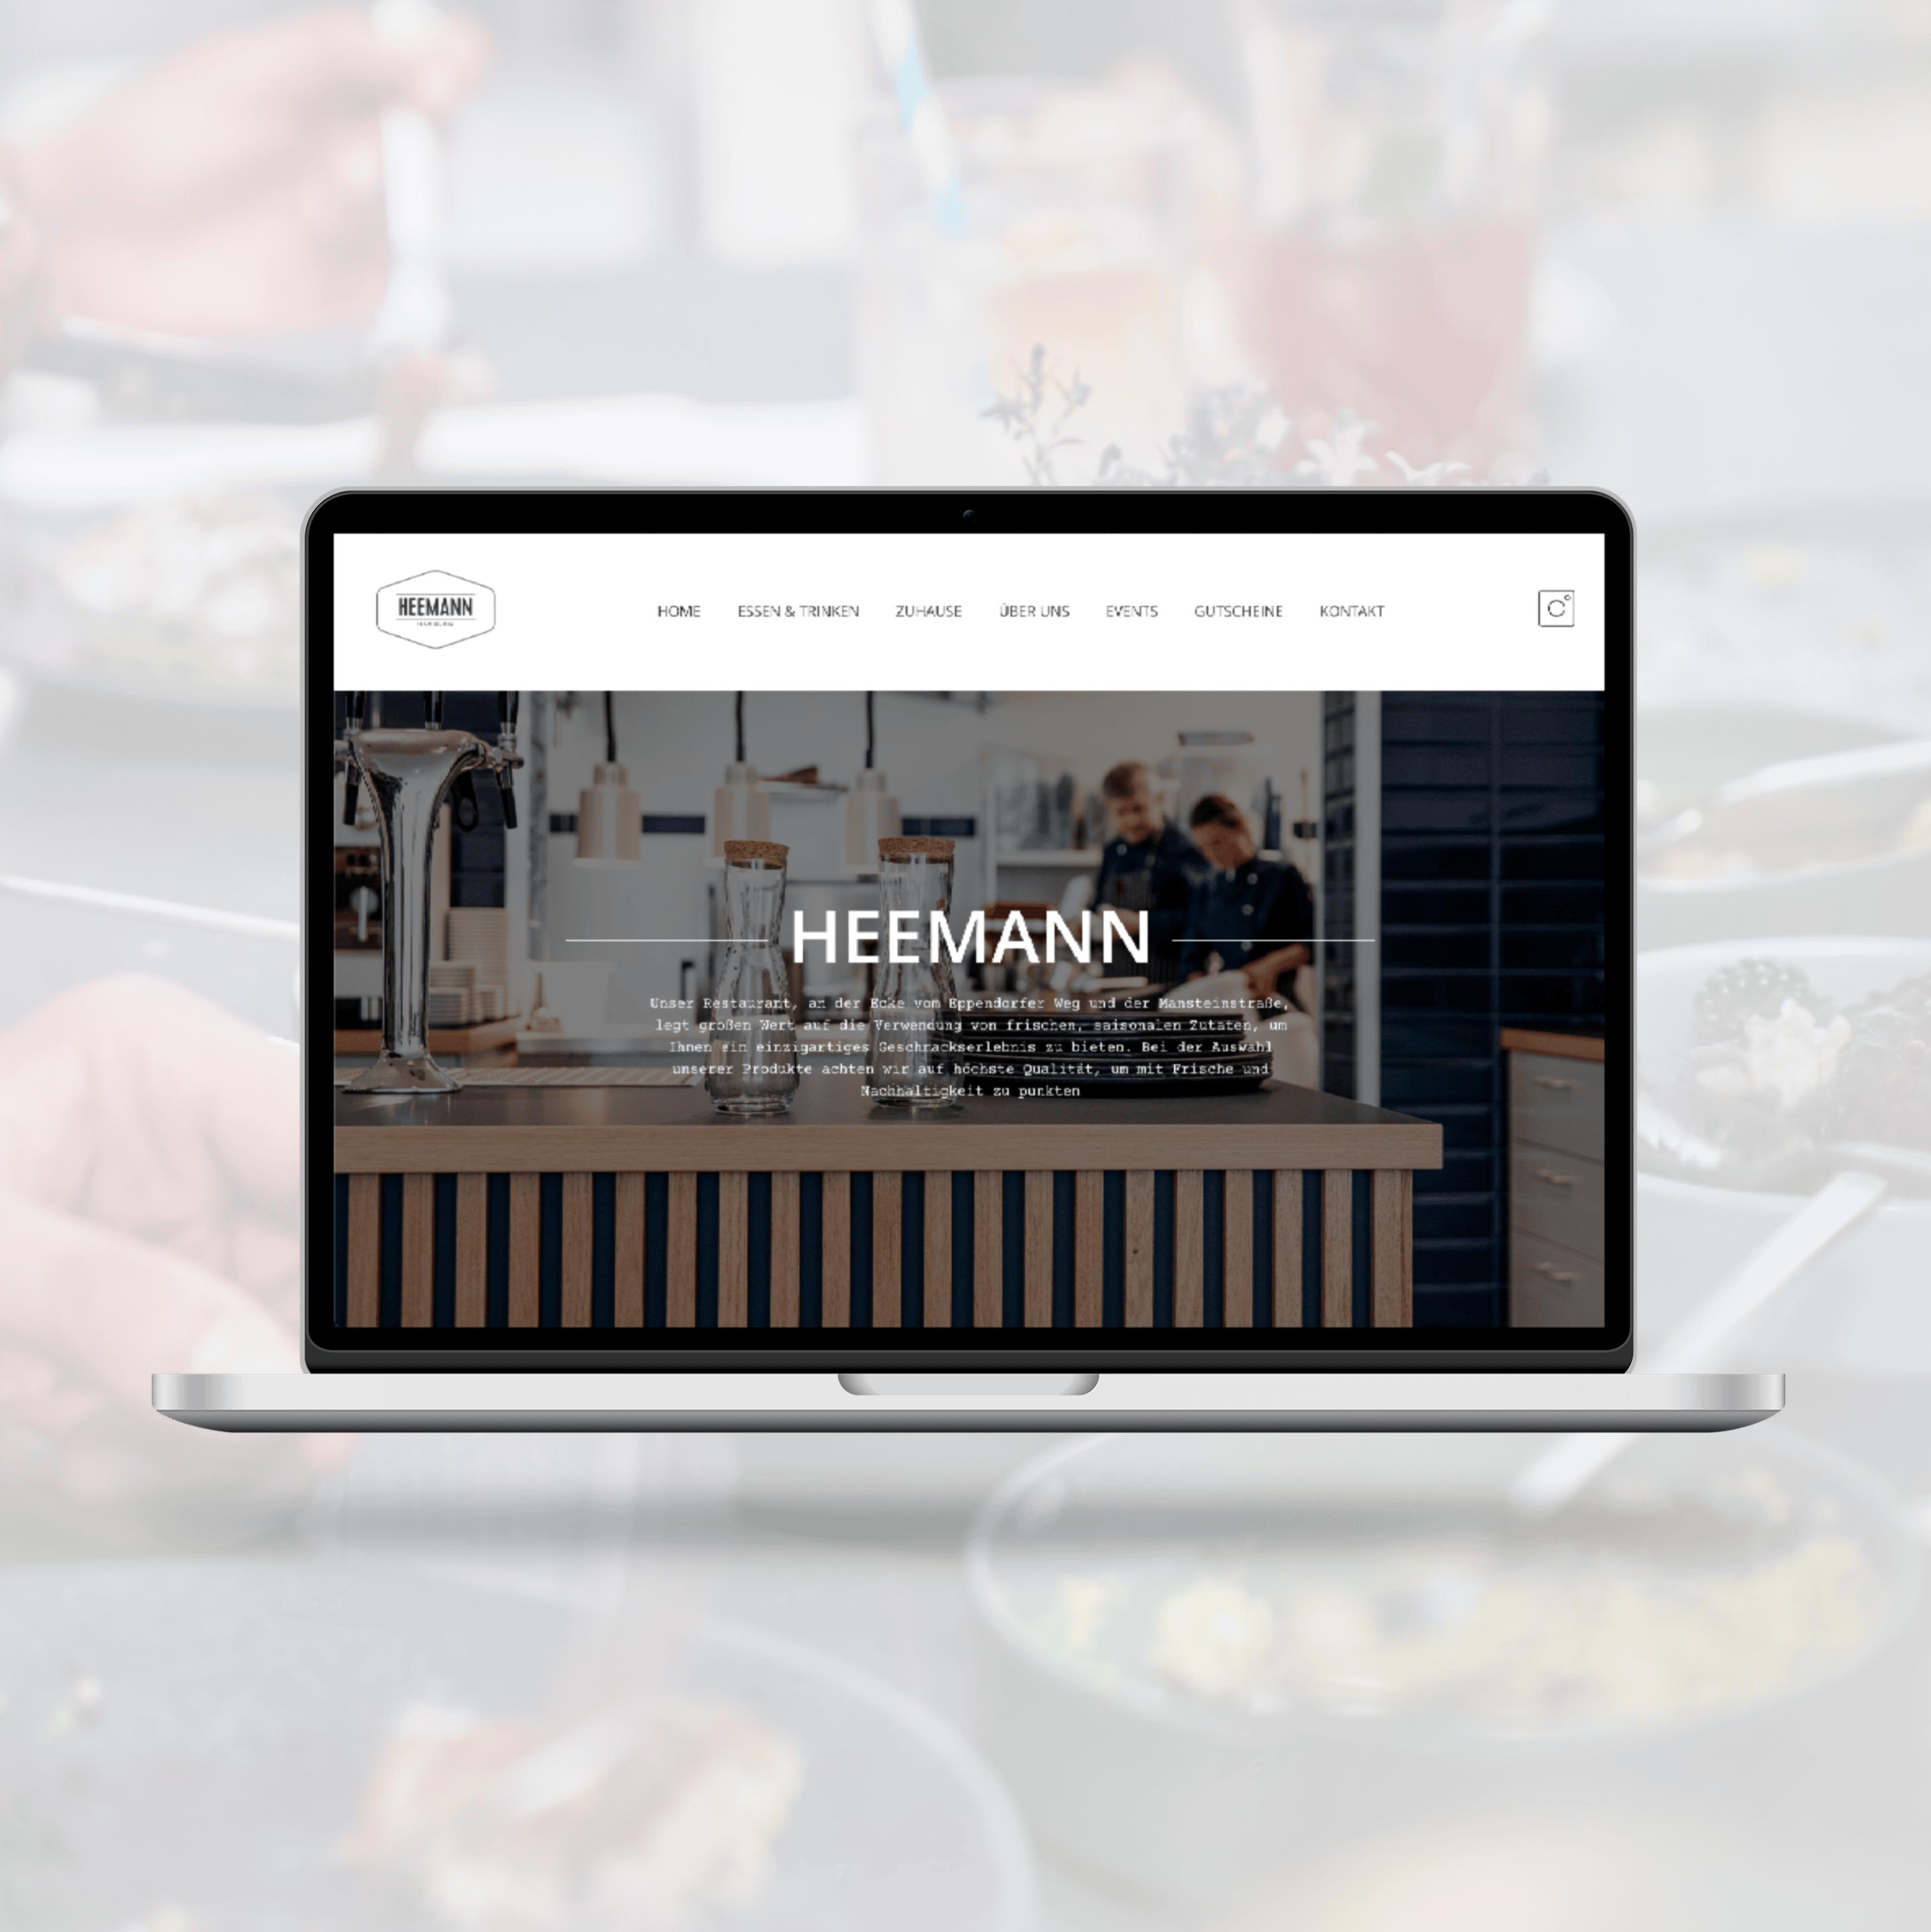 Zu sehen ist ein Teil der Website von dem Restaurant Heemann